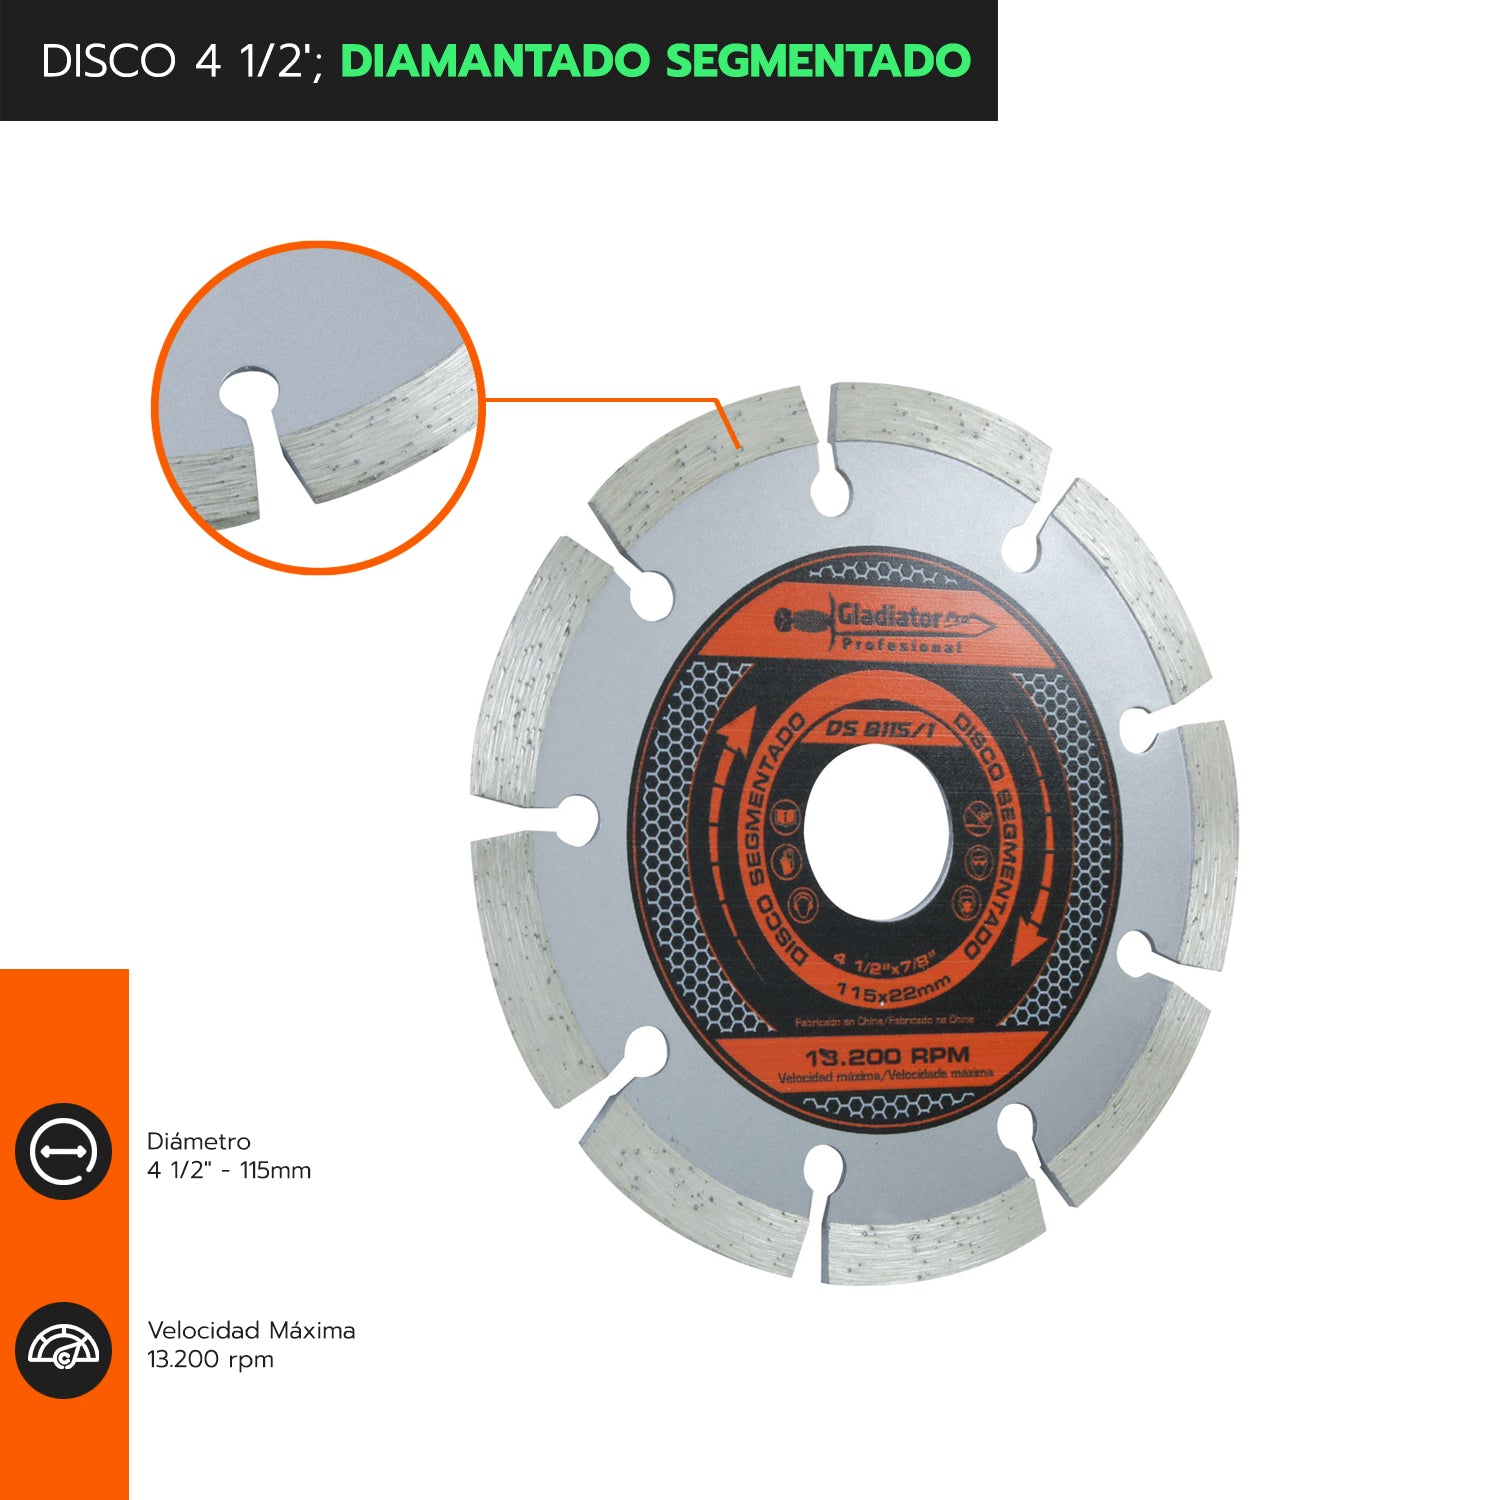 DISCO 4 1/2&#39;; DIAMANTADO SEGMENTADO DS8115/1